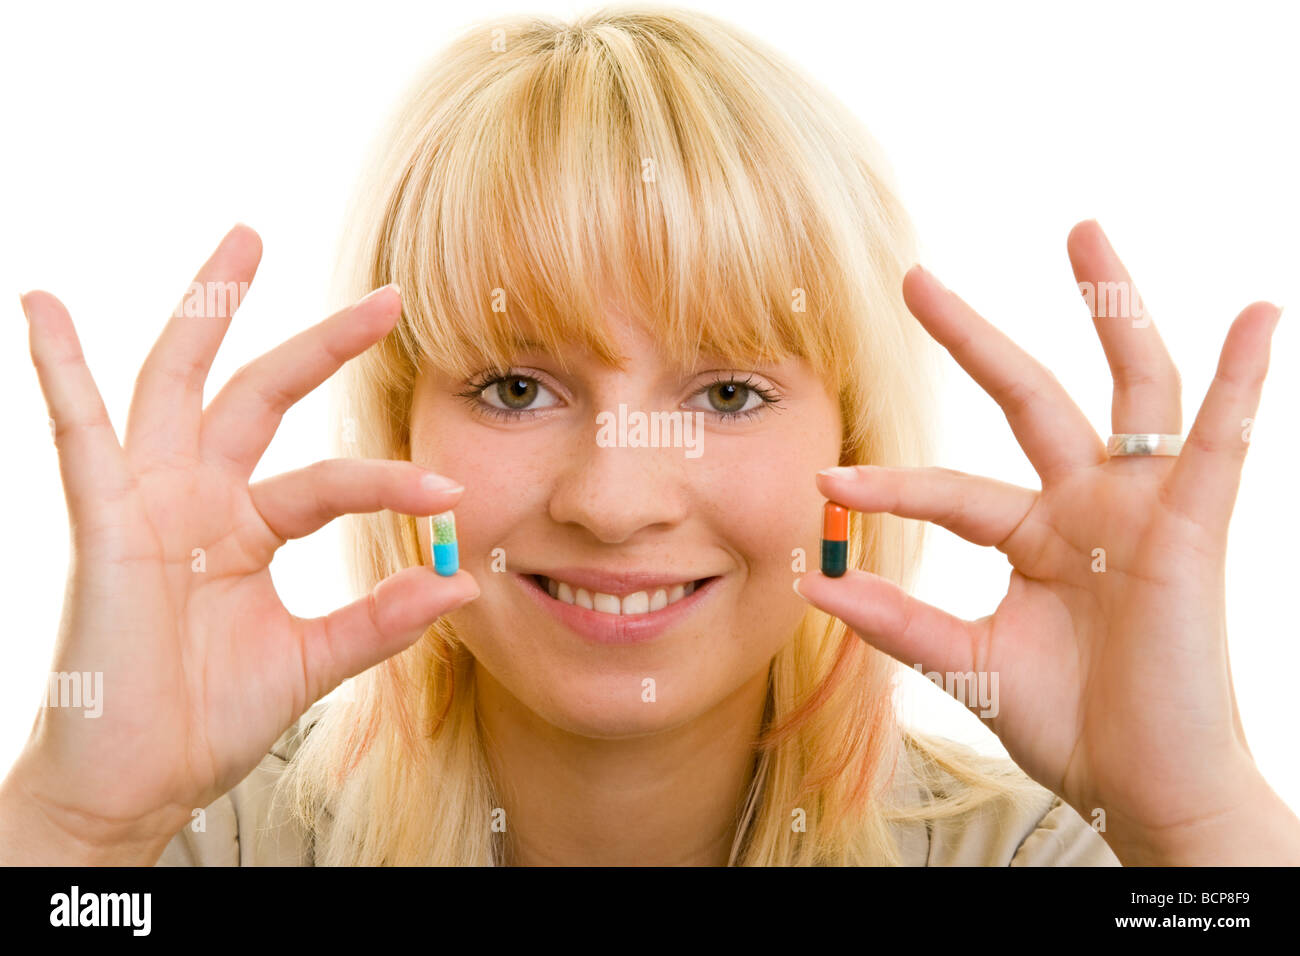 Junge Frau hält lachend zwei verschiedene Kapseln zwischen ihren Fingern Stock Photo